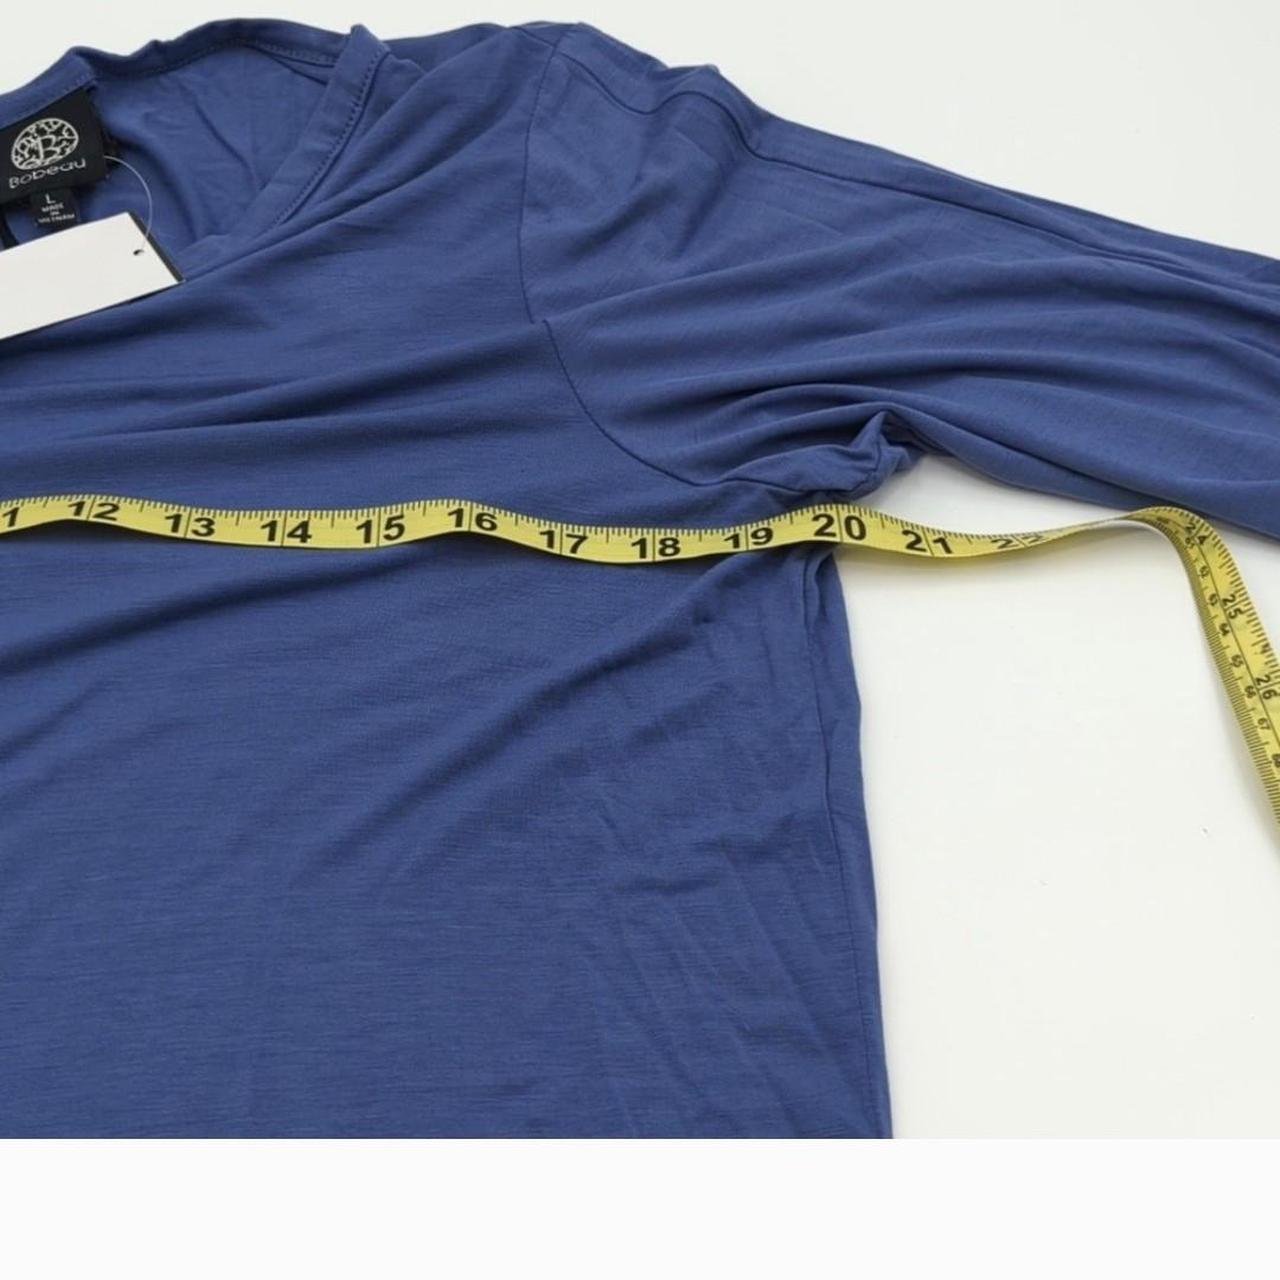 Bobeau Blue Long Tie Sleeve Sleeve Blouse-SZ L-brand... - Depop